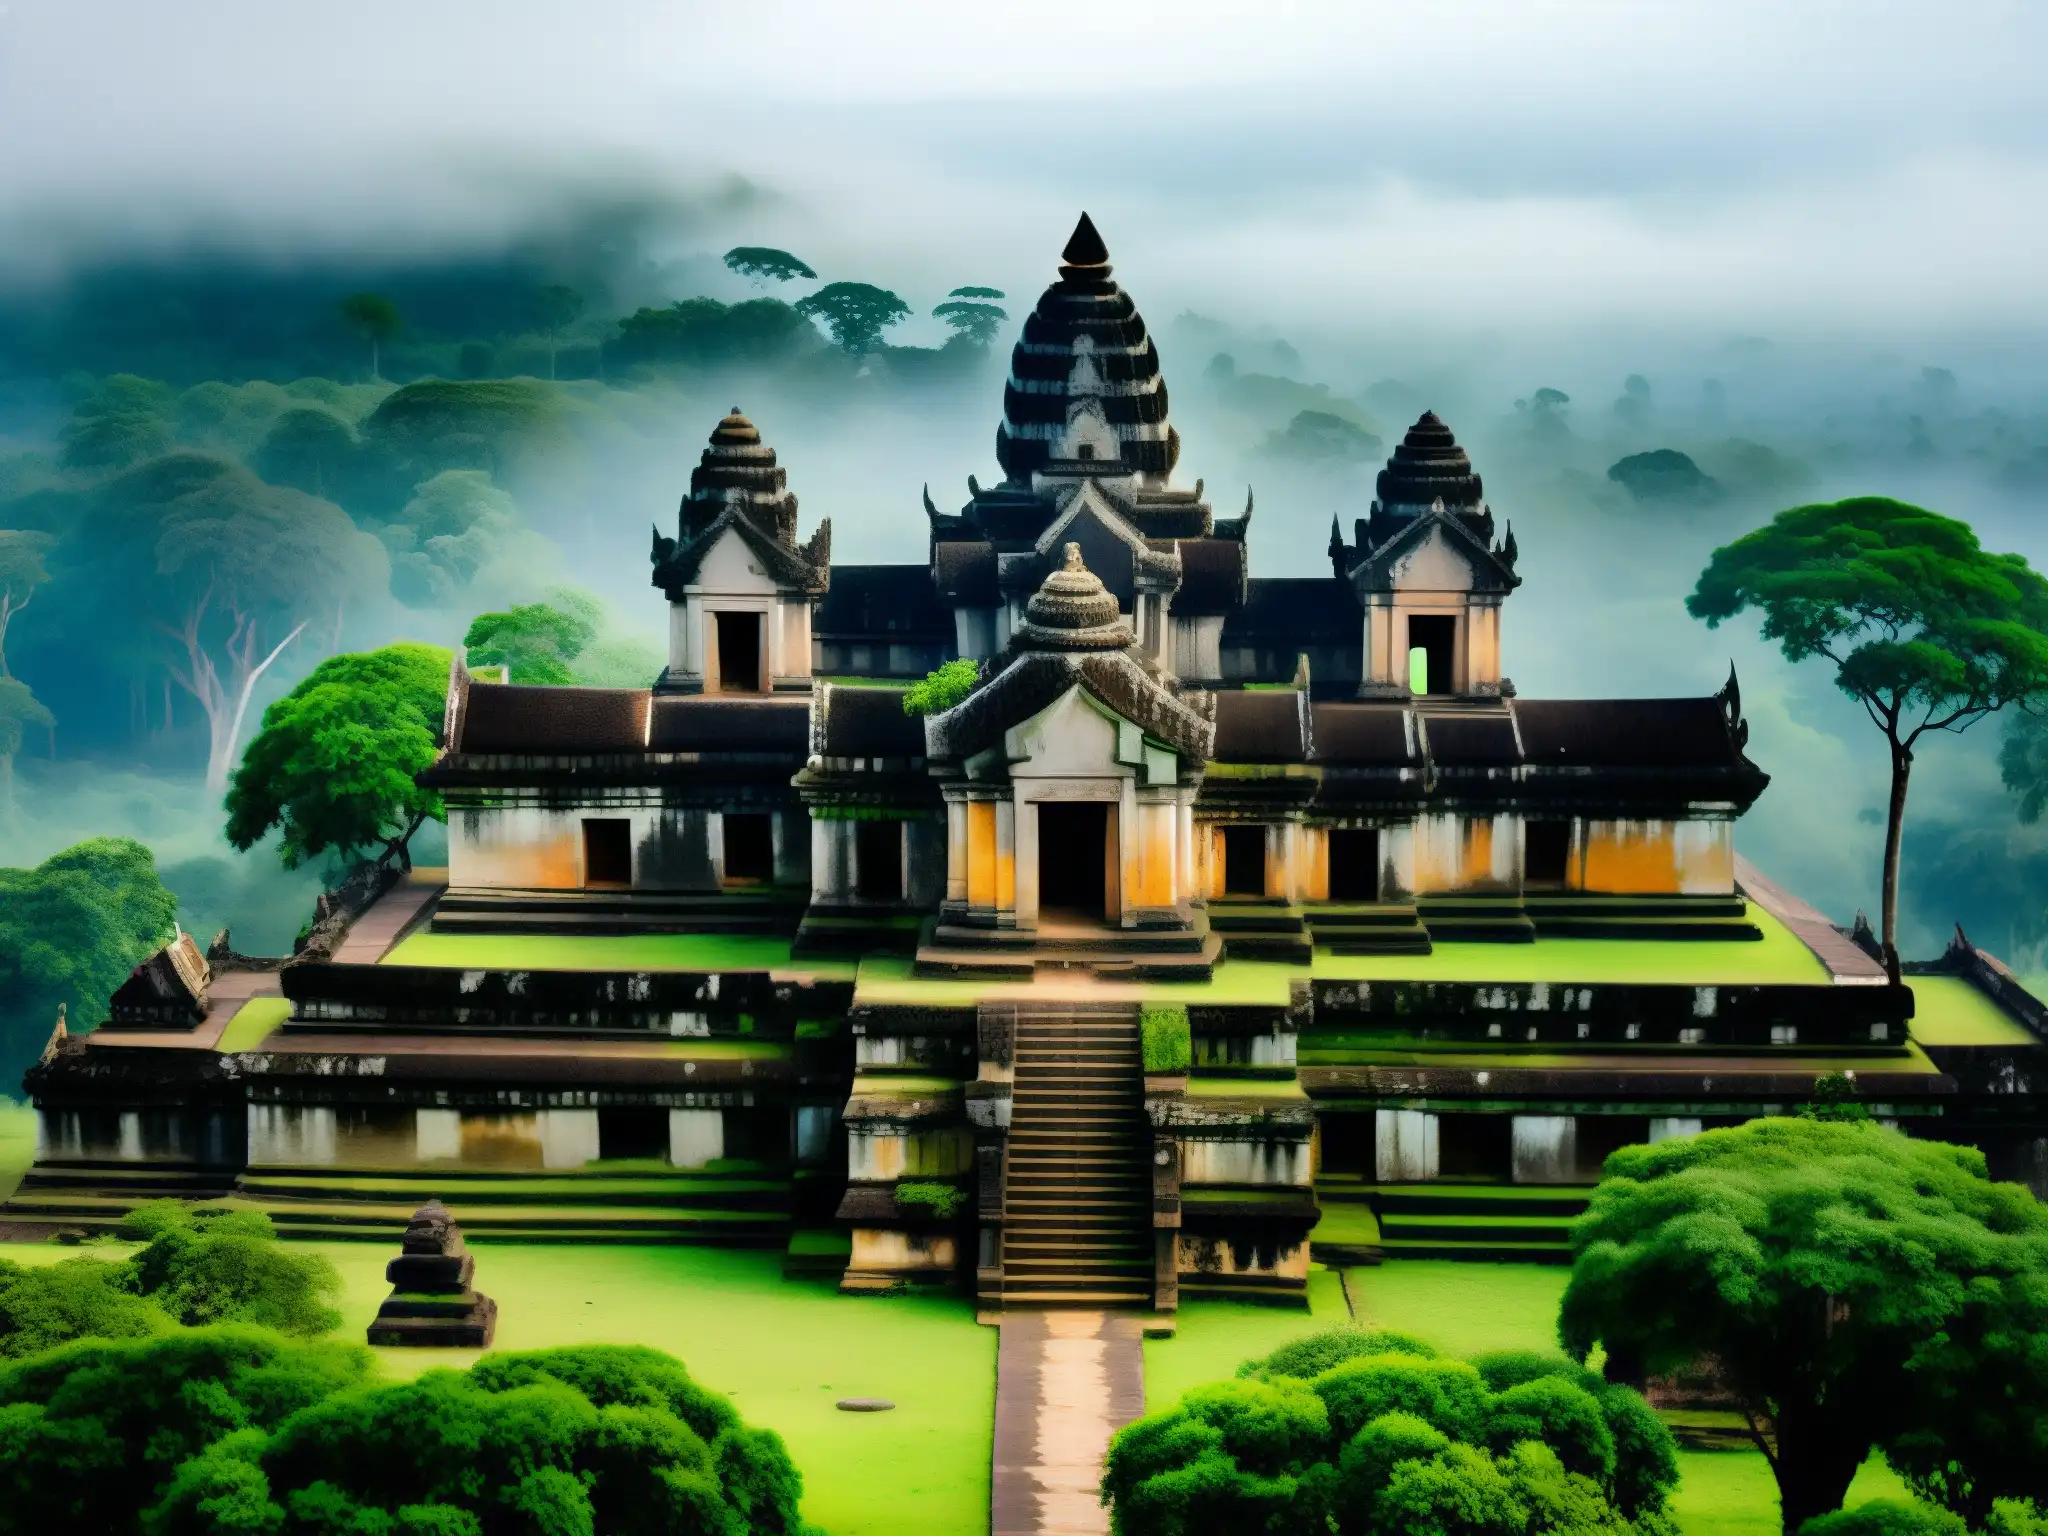 El místico Templo Preah Vihear emerge entre la selva, evocando leyendas y maldiciones ancestrales